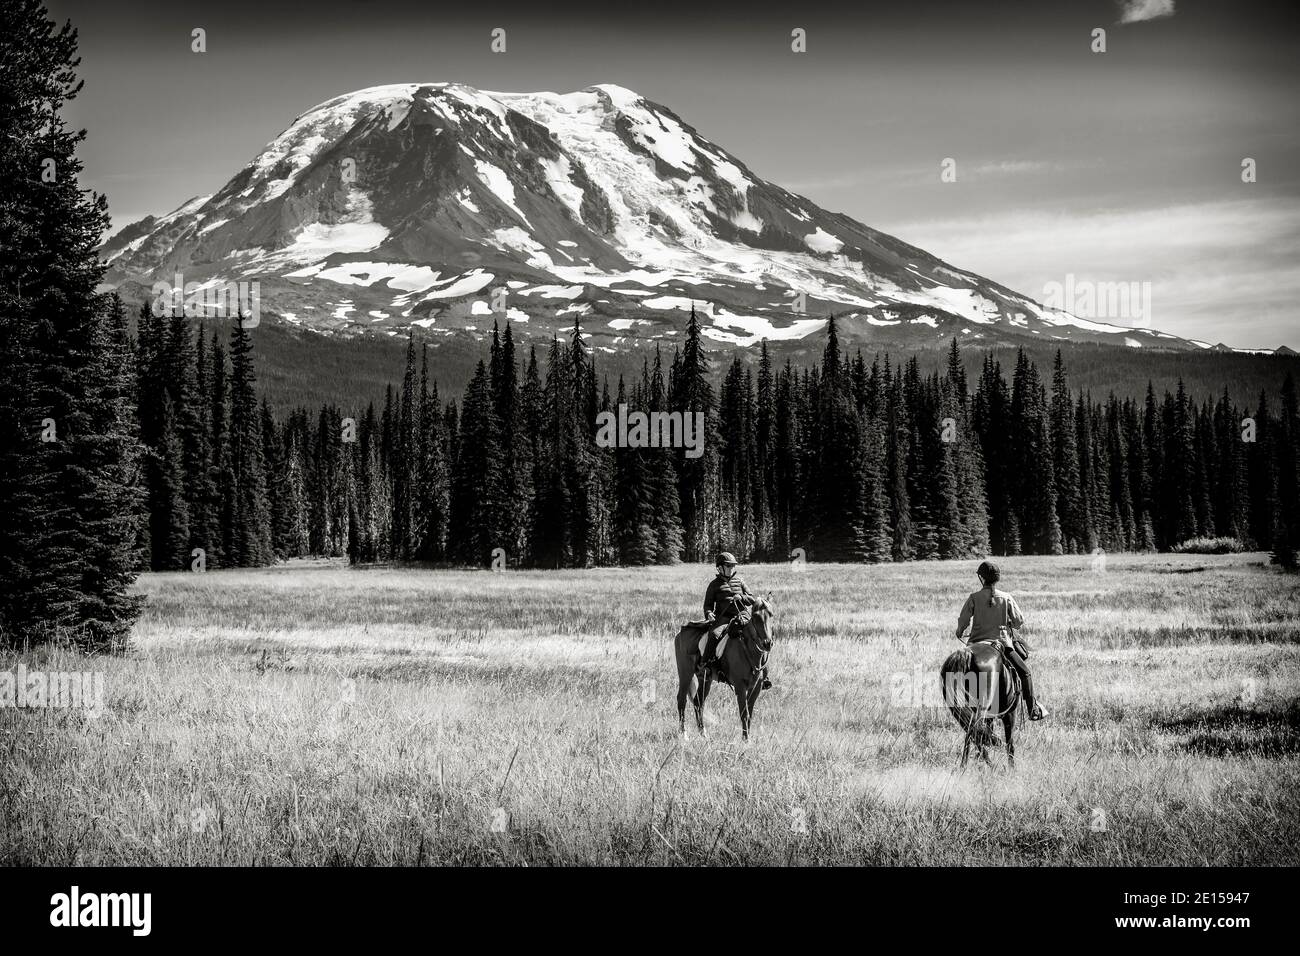 WA17636-00-BW..... WASHINGTON - cavaliers sur la piste Muddy Meadows Trail avec Mount Adams en arrière-plan, forêt nationale Gifford Pinchot. Banque D'Images